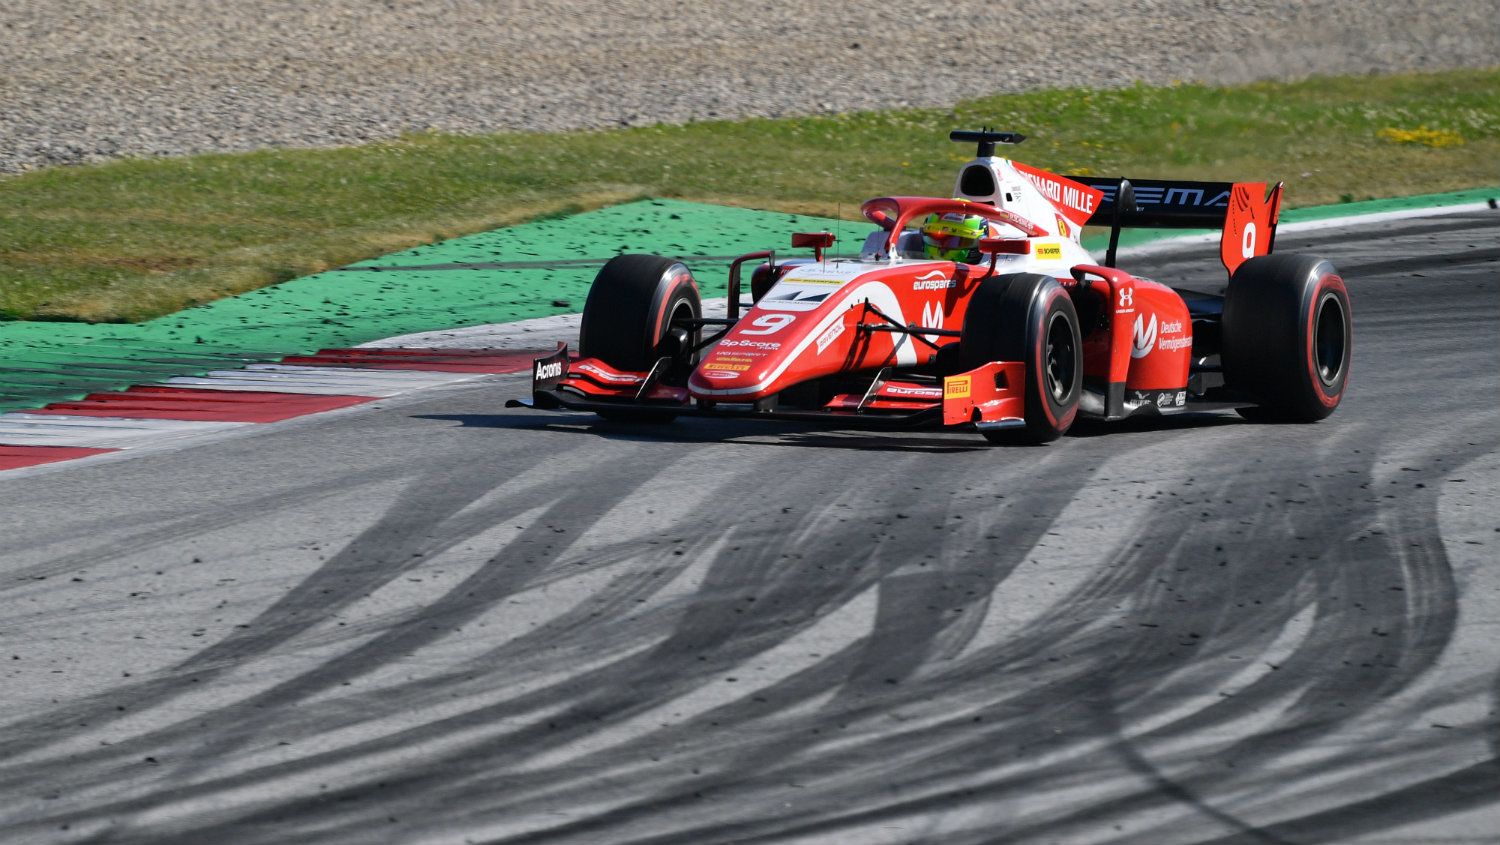 Mick Schumacher óriási versenye: 18. helyről indulva lett negyedik